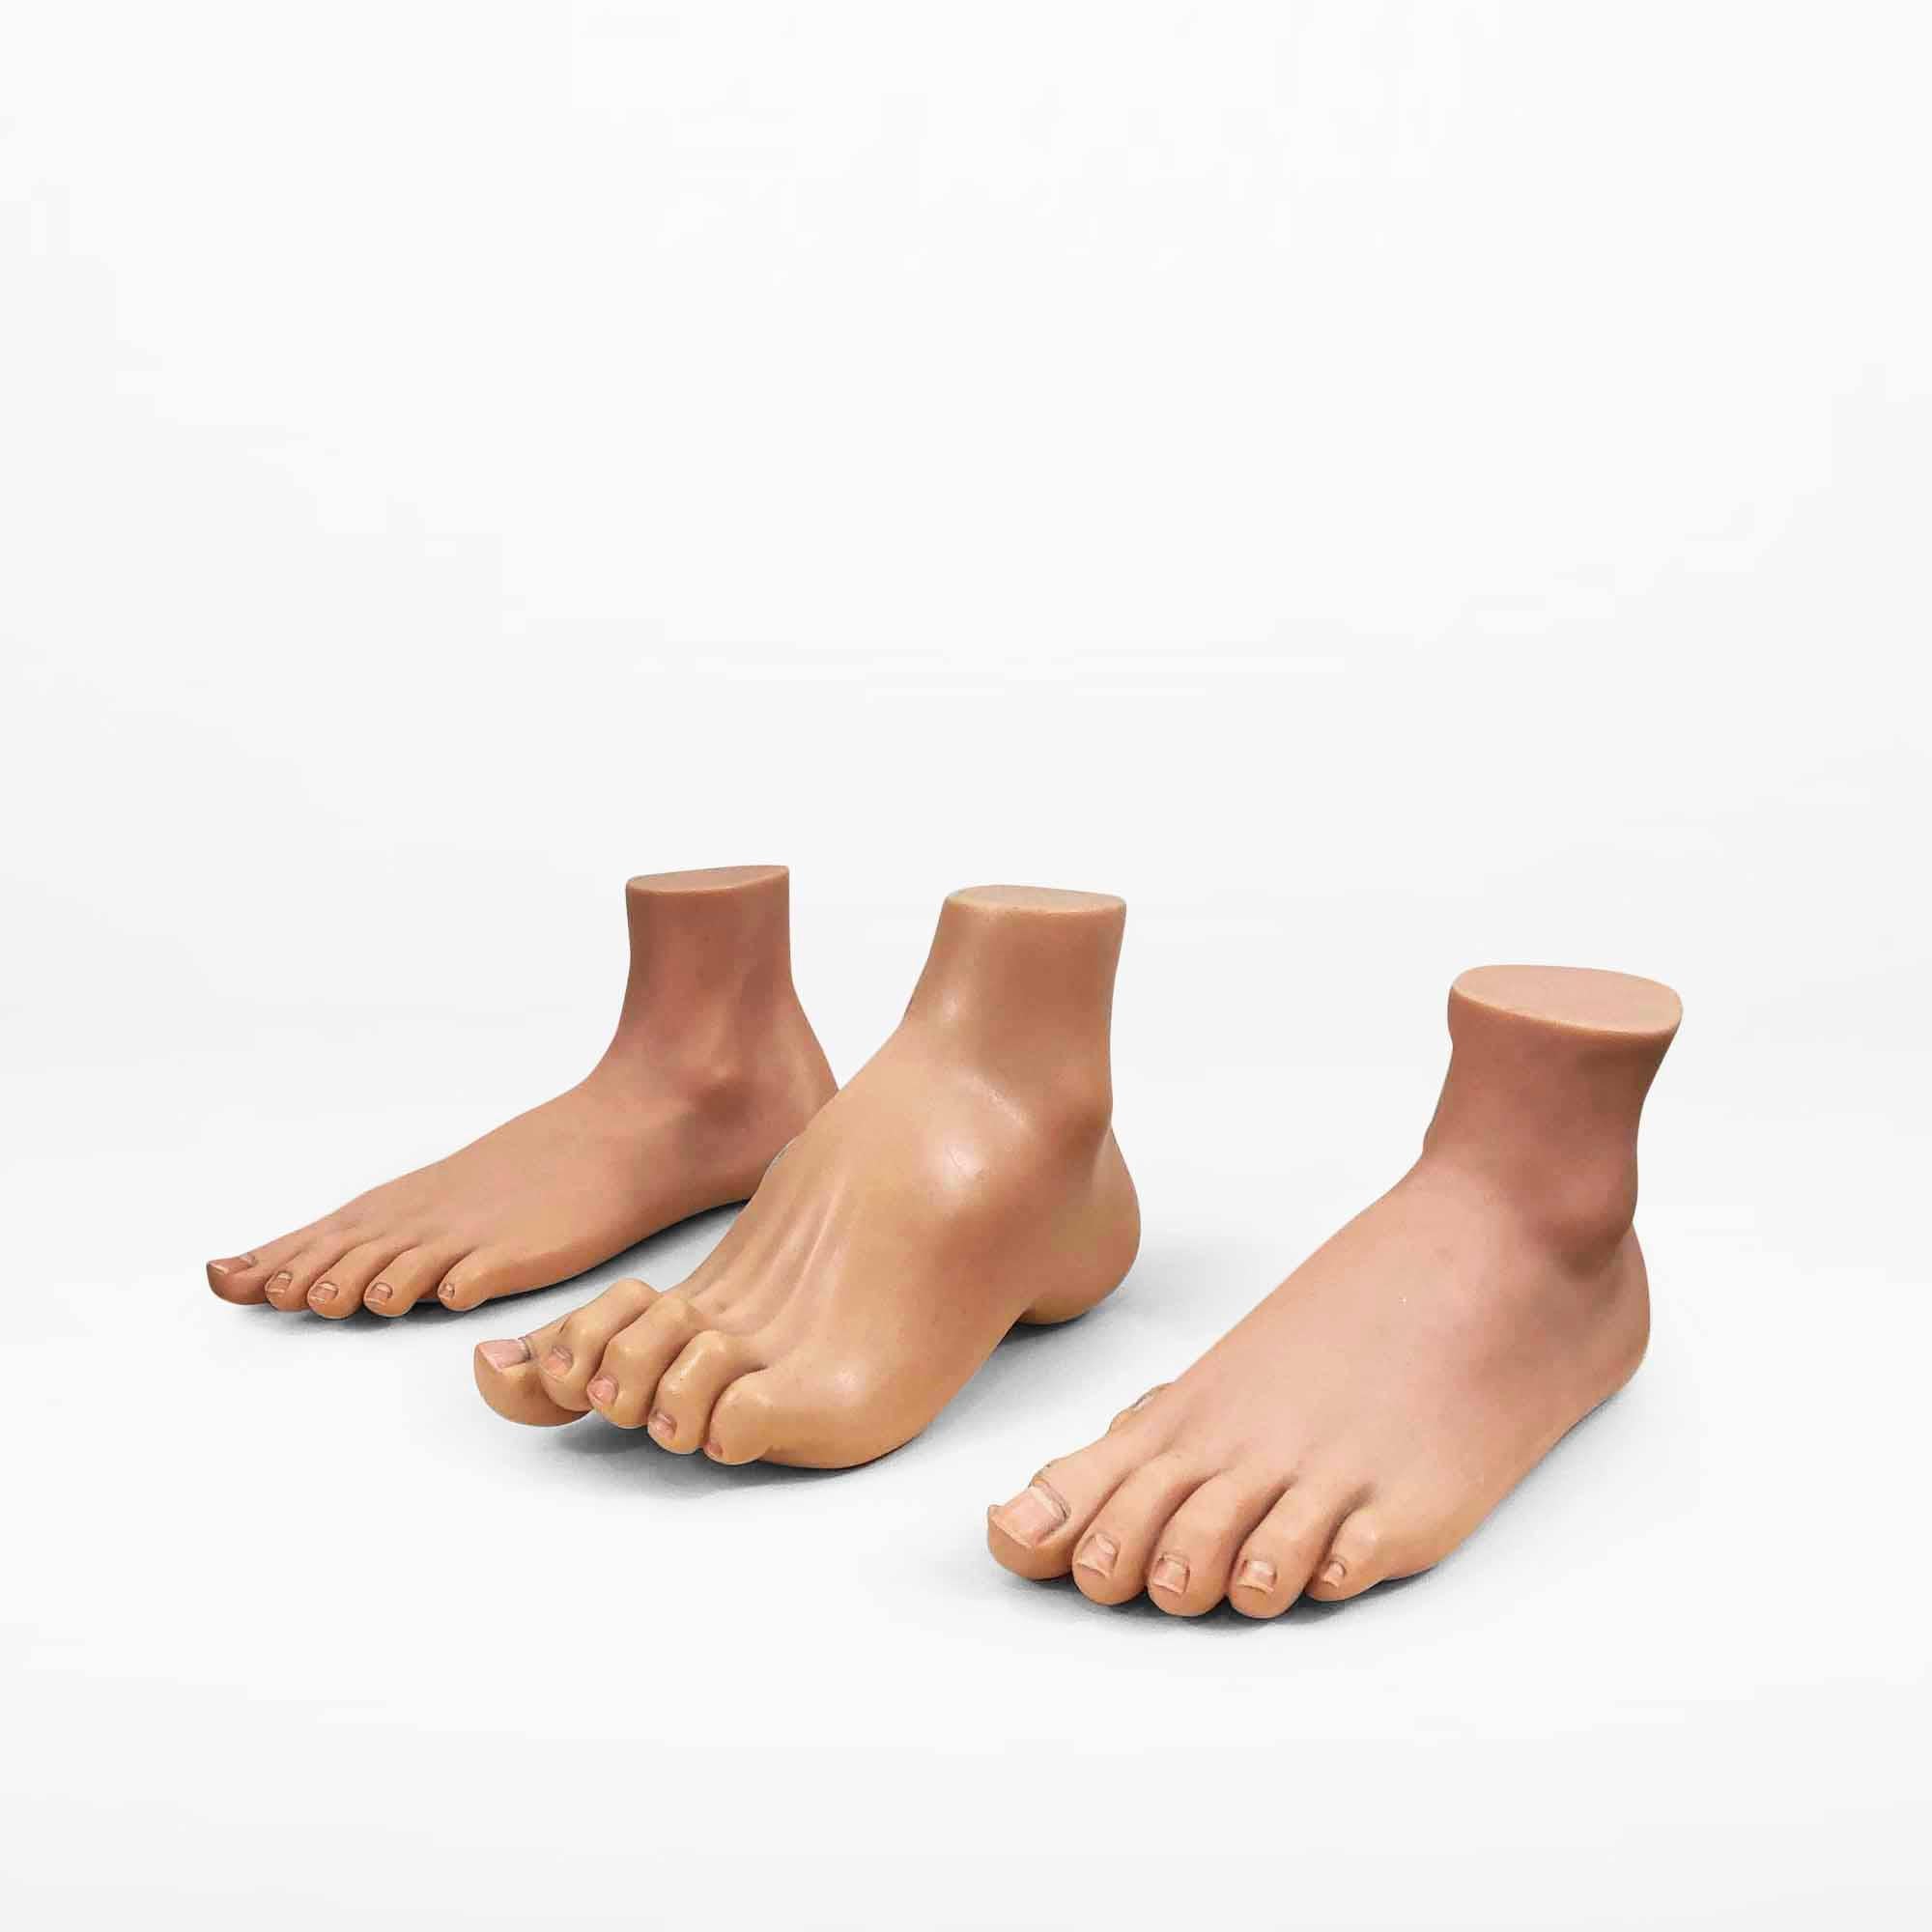 European Vintage Anatomical Model of 3 Human Feet, Set of 3